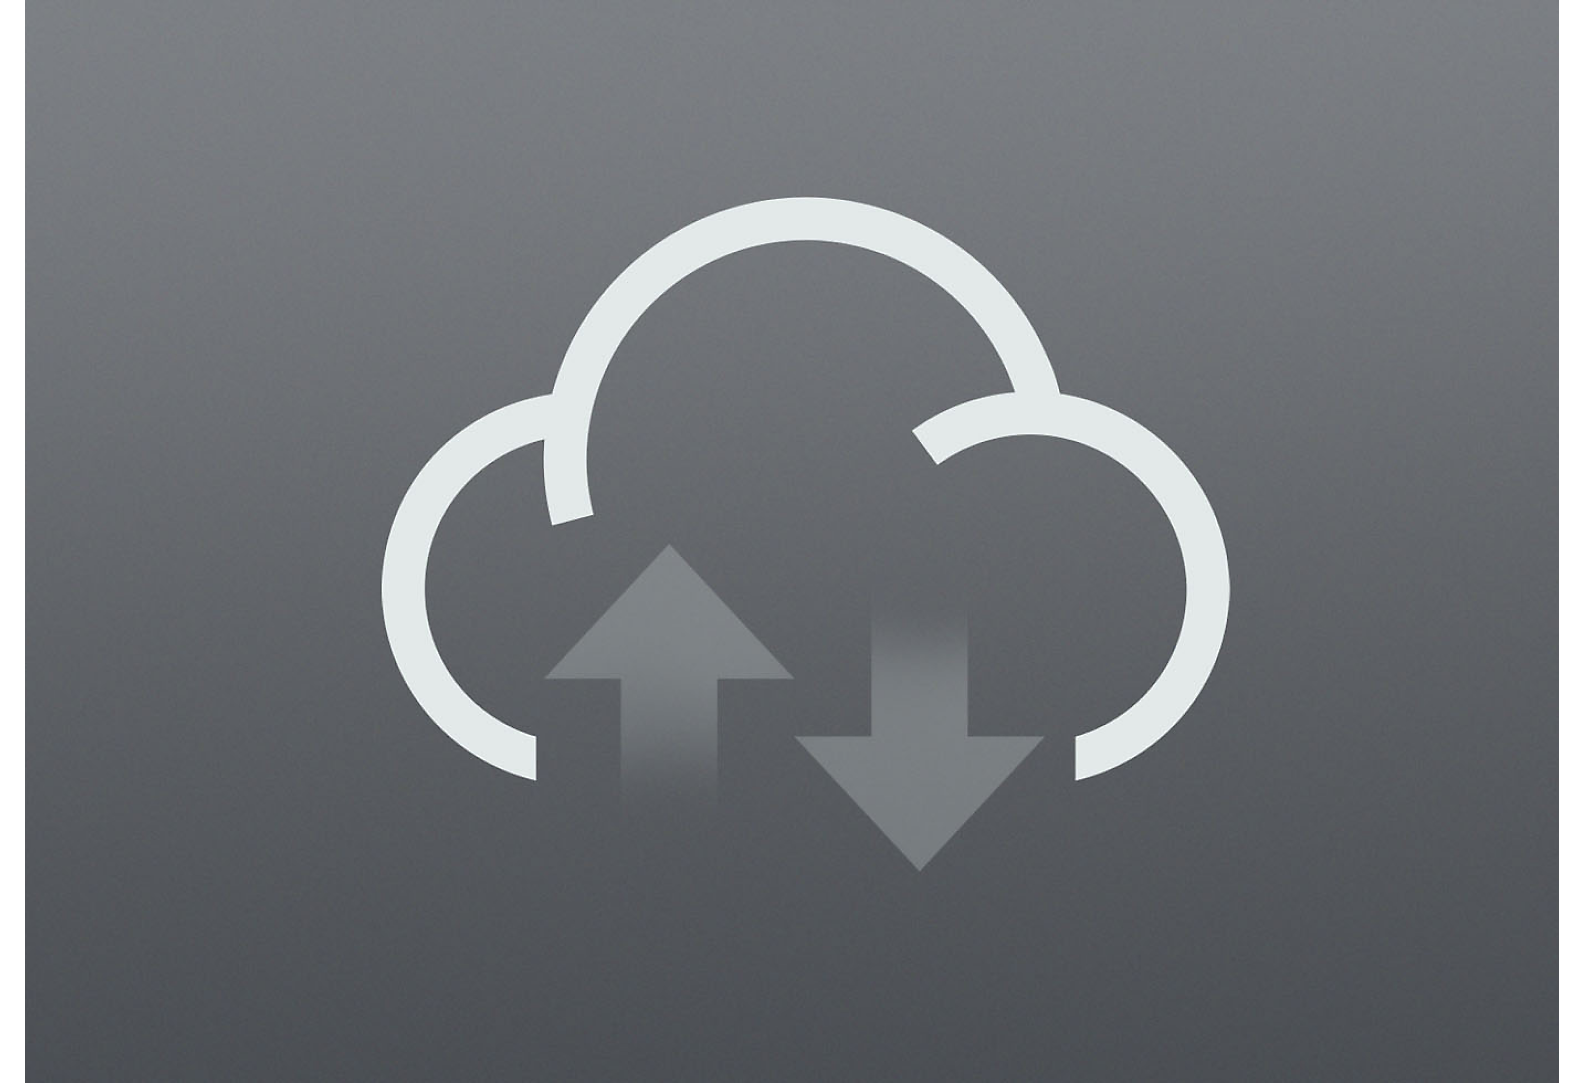 Icône grise de chargement/téléchargement depuis le Cloud